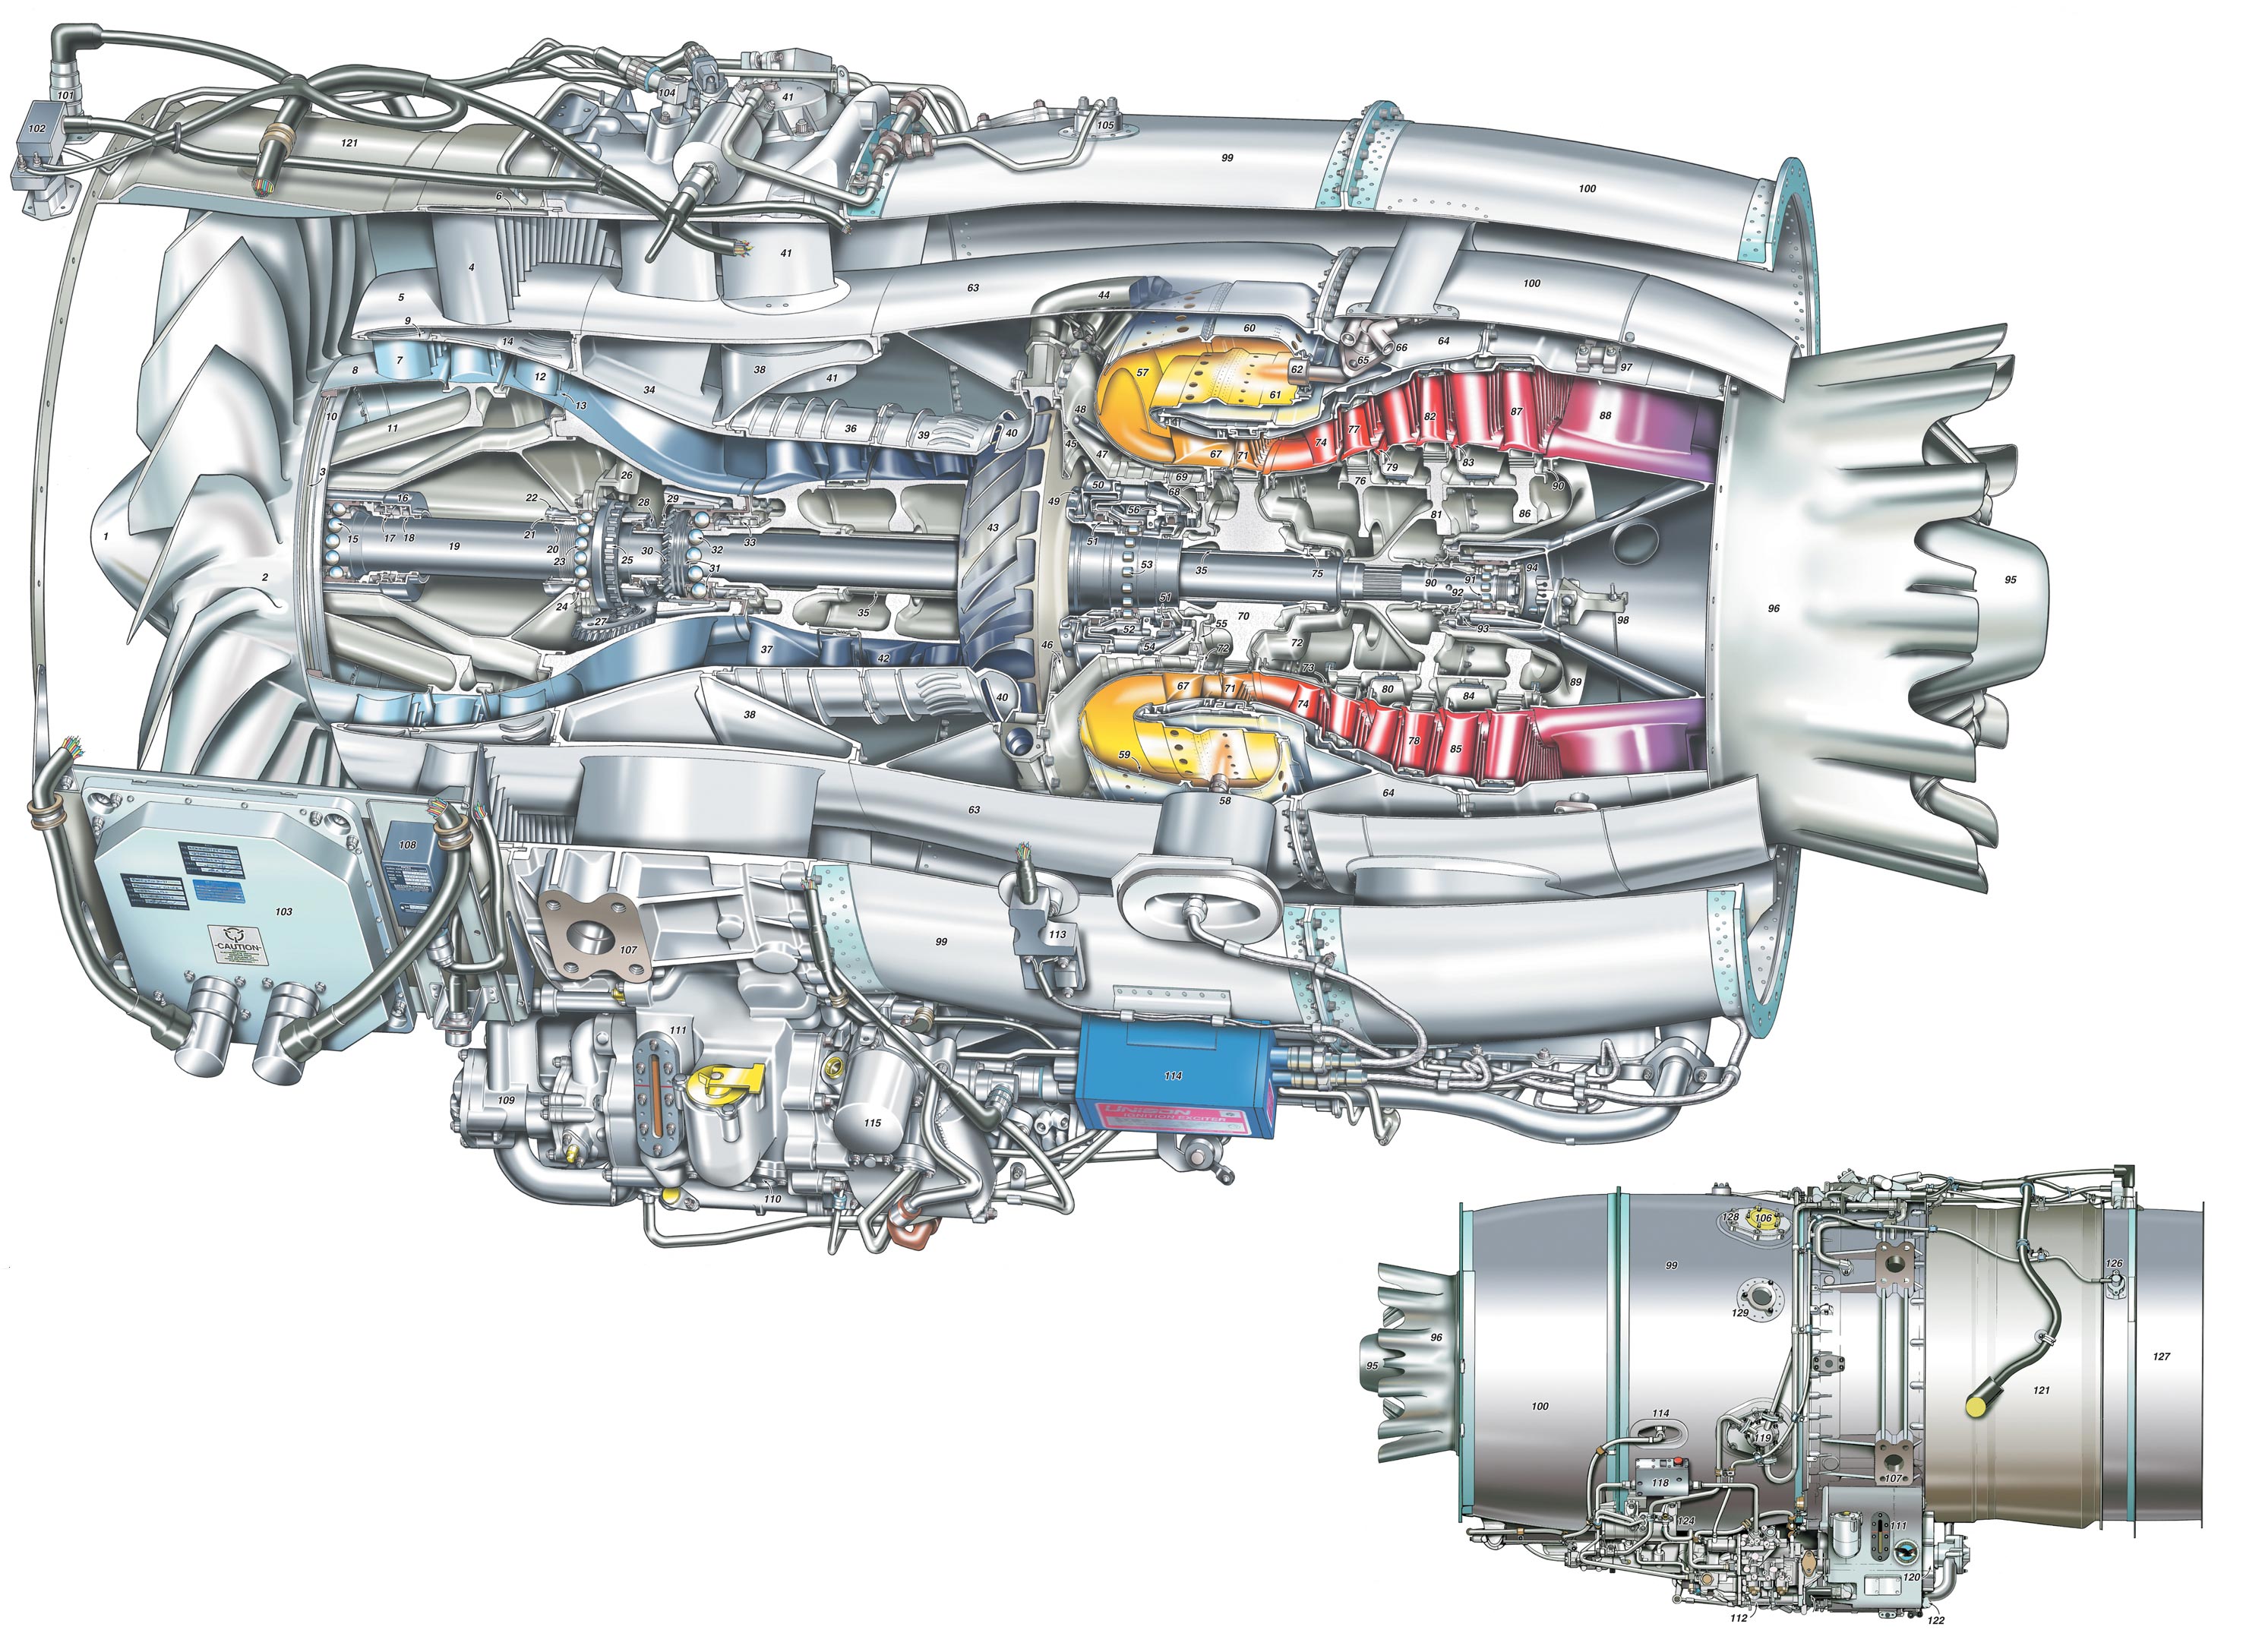 PW500 engine cutaway